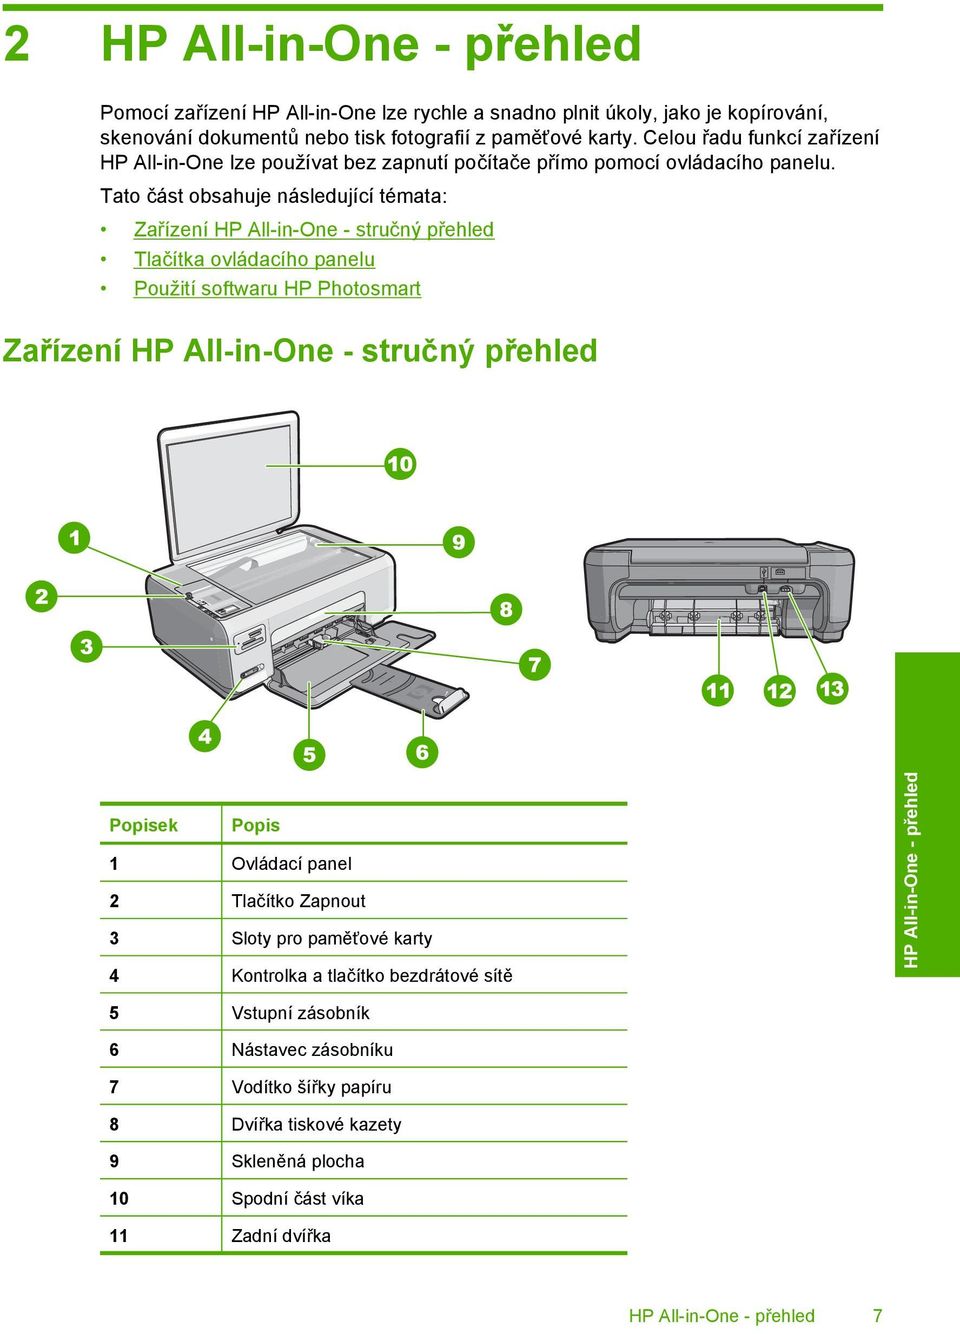 Tato část obsahuje následující témata: Zařízení HP All-in-One - stručný přehled Tlačítka ovládacího panelu Použití softwaru HP Photosmart Zařízení HP All-in-One - stručný přehled Popisek